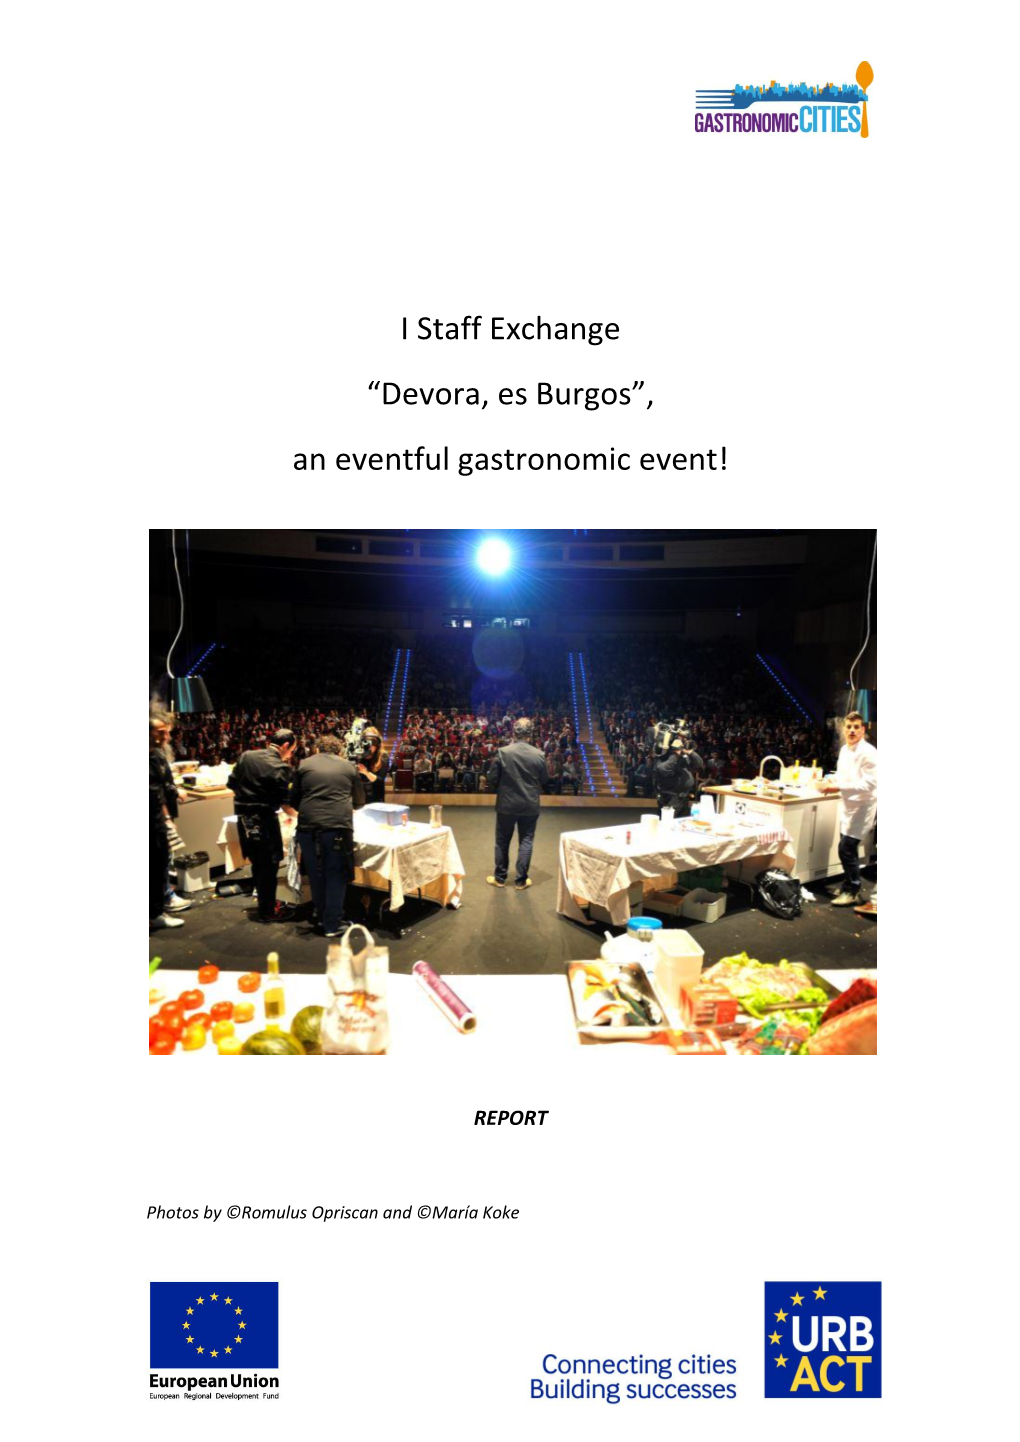 I Staff Exchange “Devora, Es Burgos”, an Eventful Gastronomic Event!